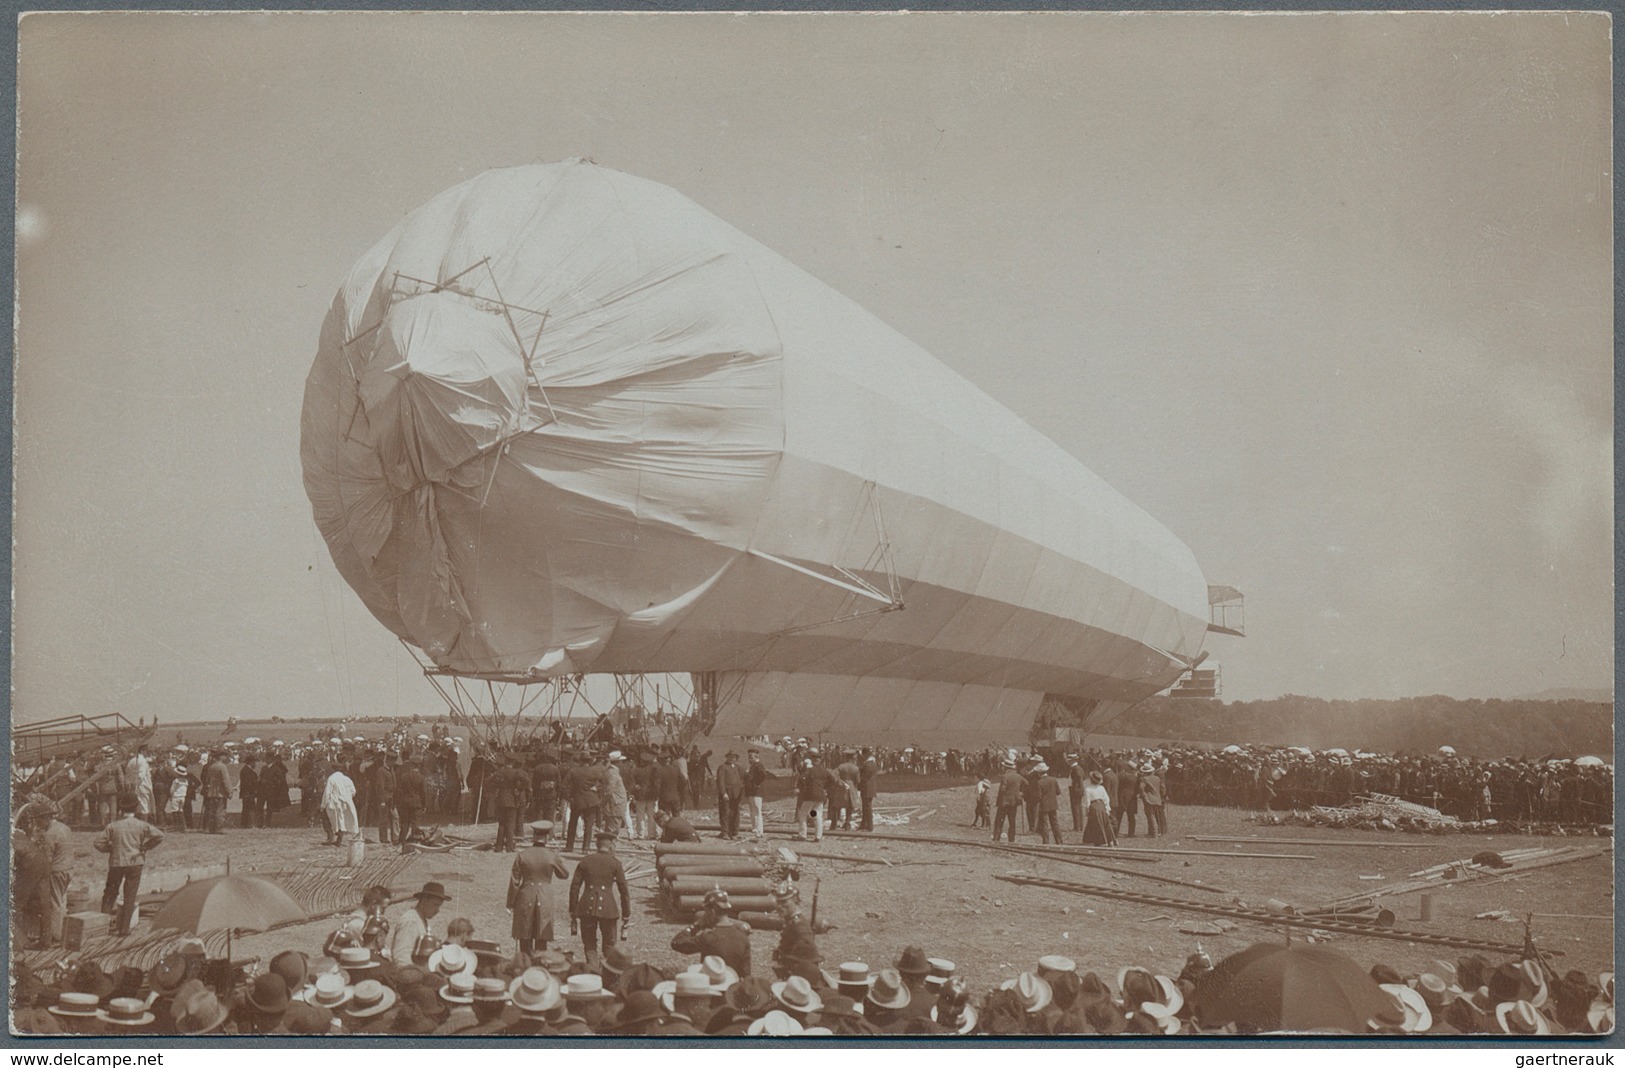 Zeppelinpost Deutschland: Amazing group of ca. 178 Zeppelin postcards mostly Echt Fotos from the pio